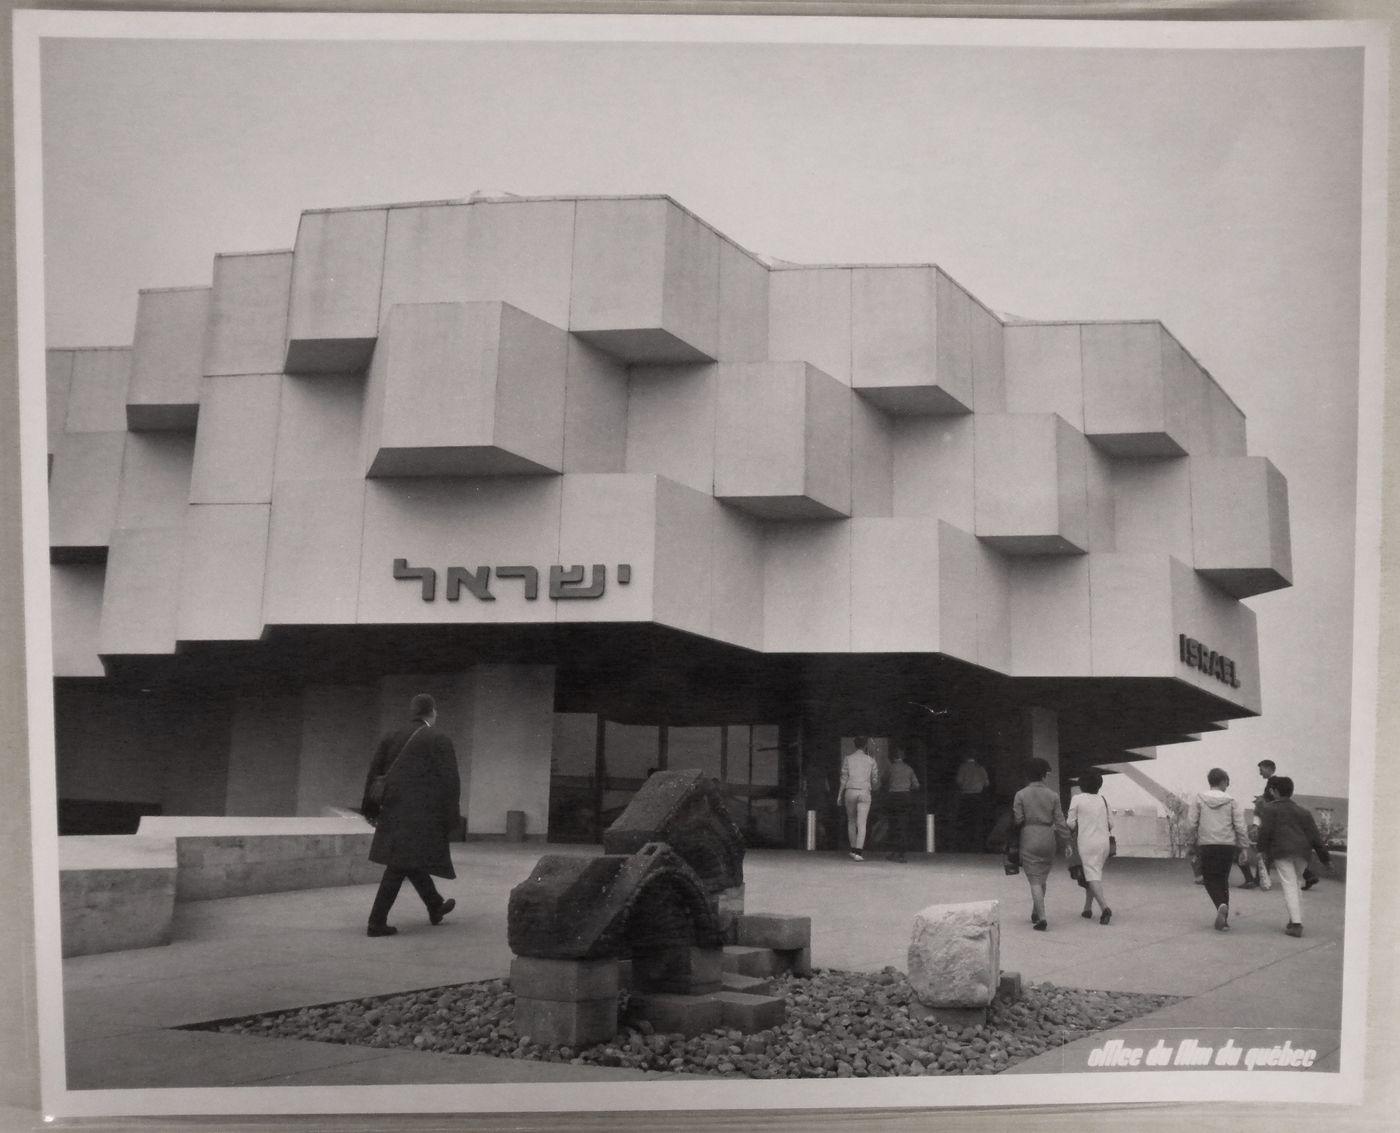 View of the Israel Pavilion, Expo 67, Montréal, Québec